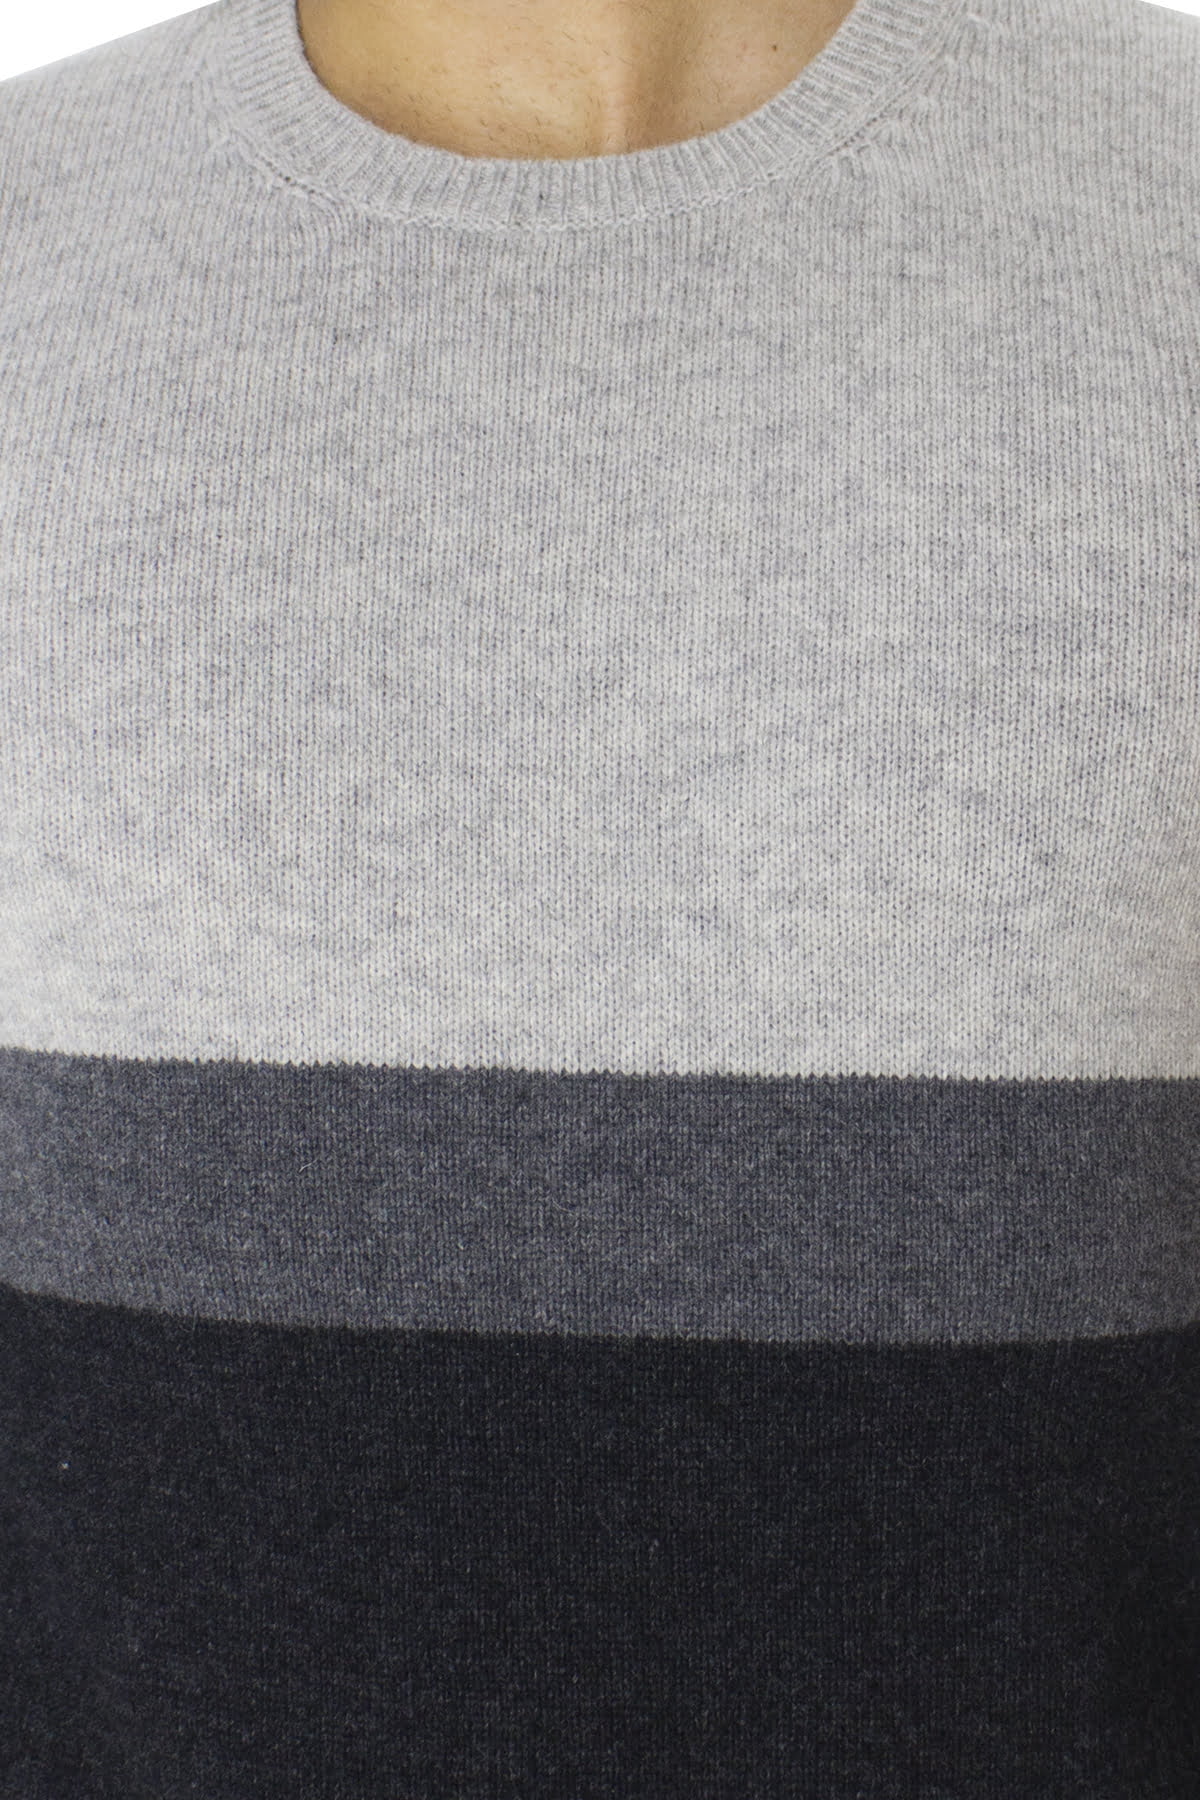 Maglione uomo Girocollo grigio chiaro in lana merinos a fasce multicolor slim fit made in italy